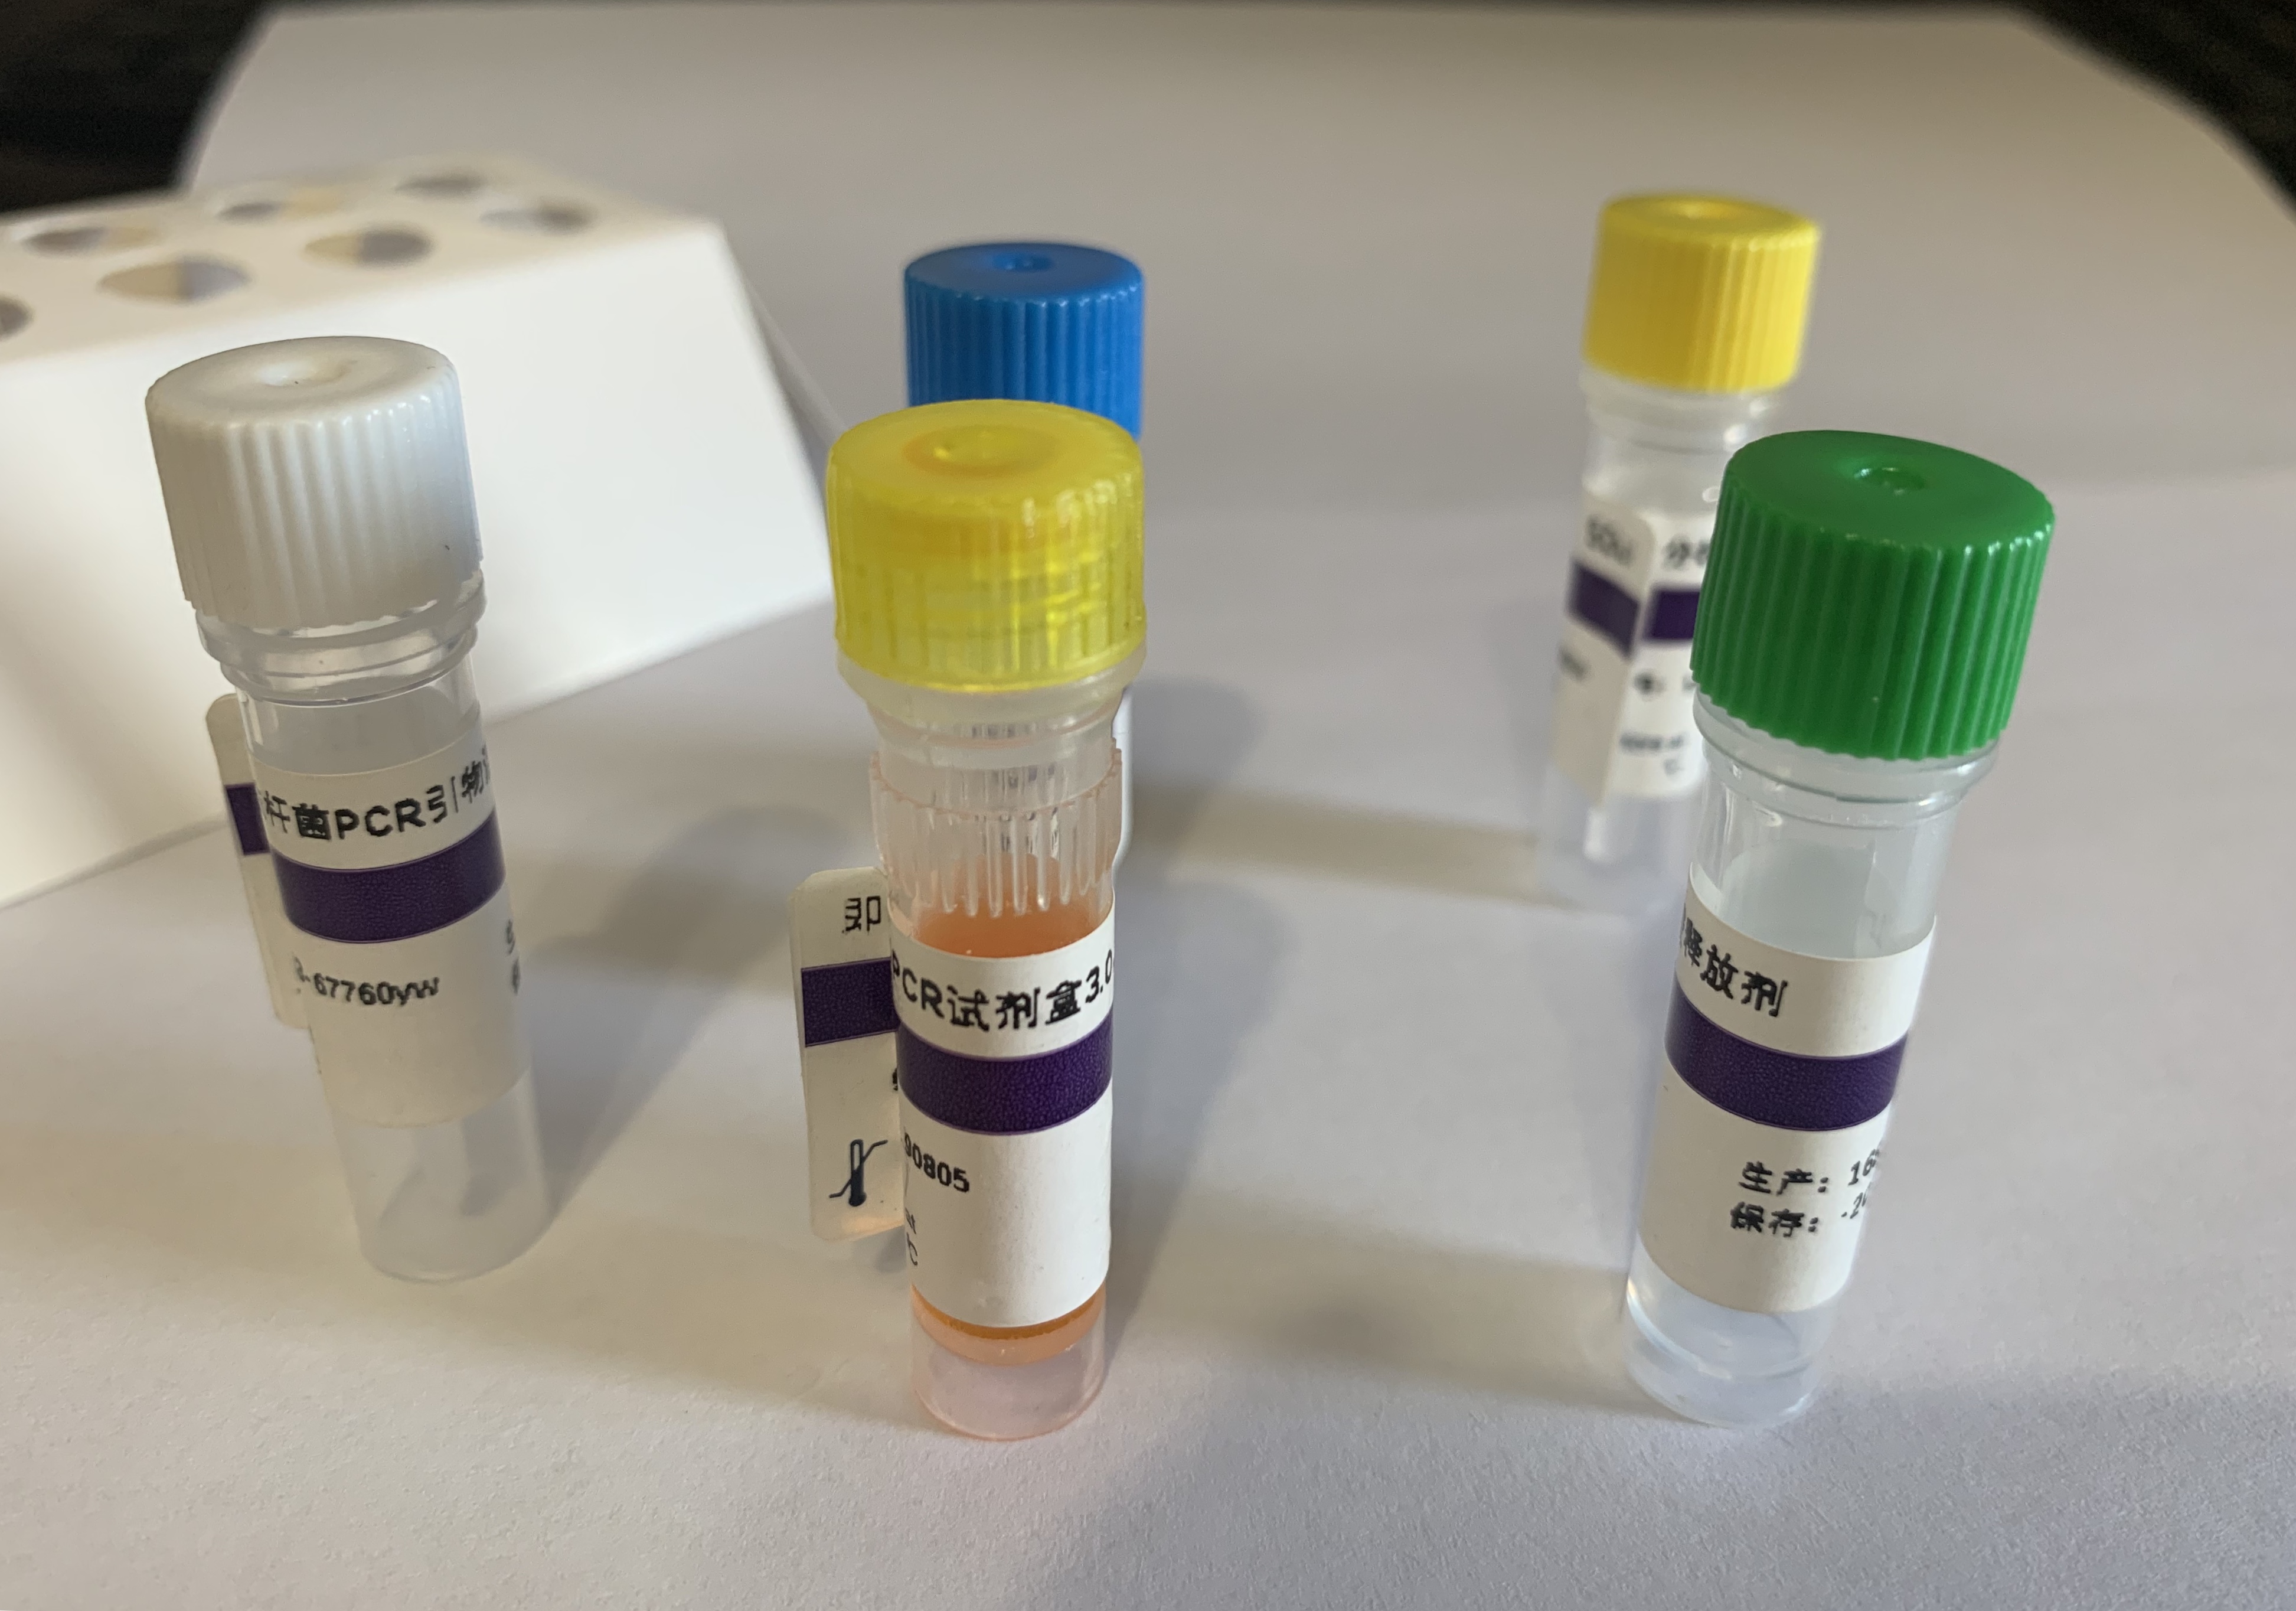 耐青霉素肺炎链球菌探针法荧光定量PCR试剂盒